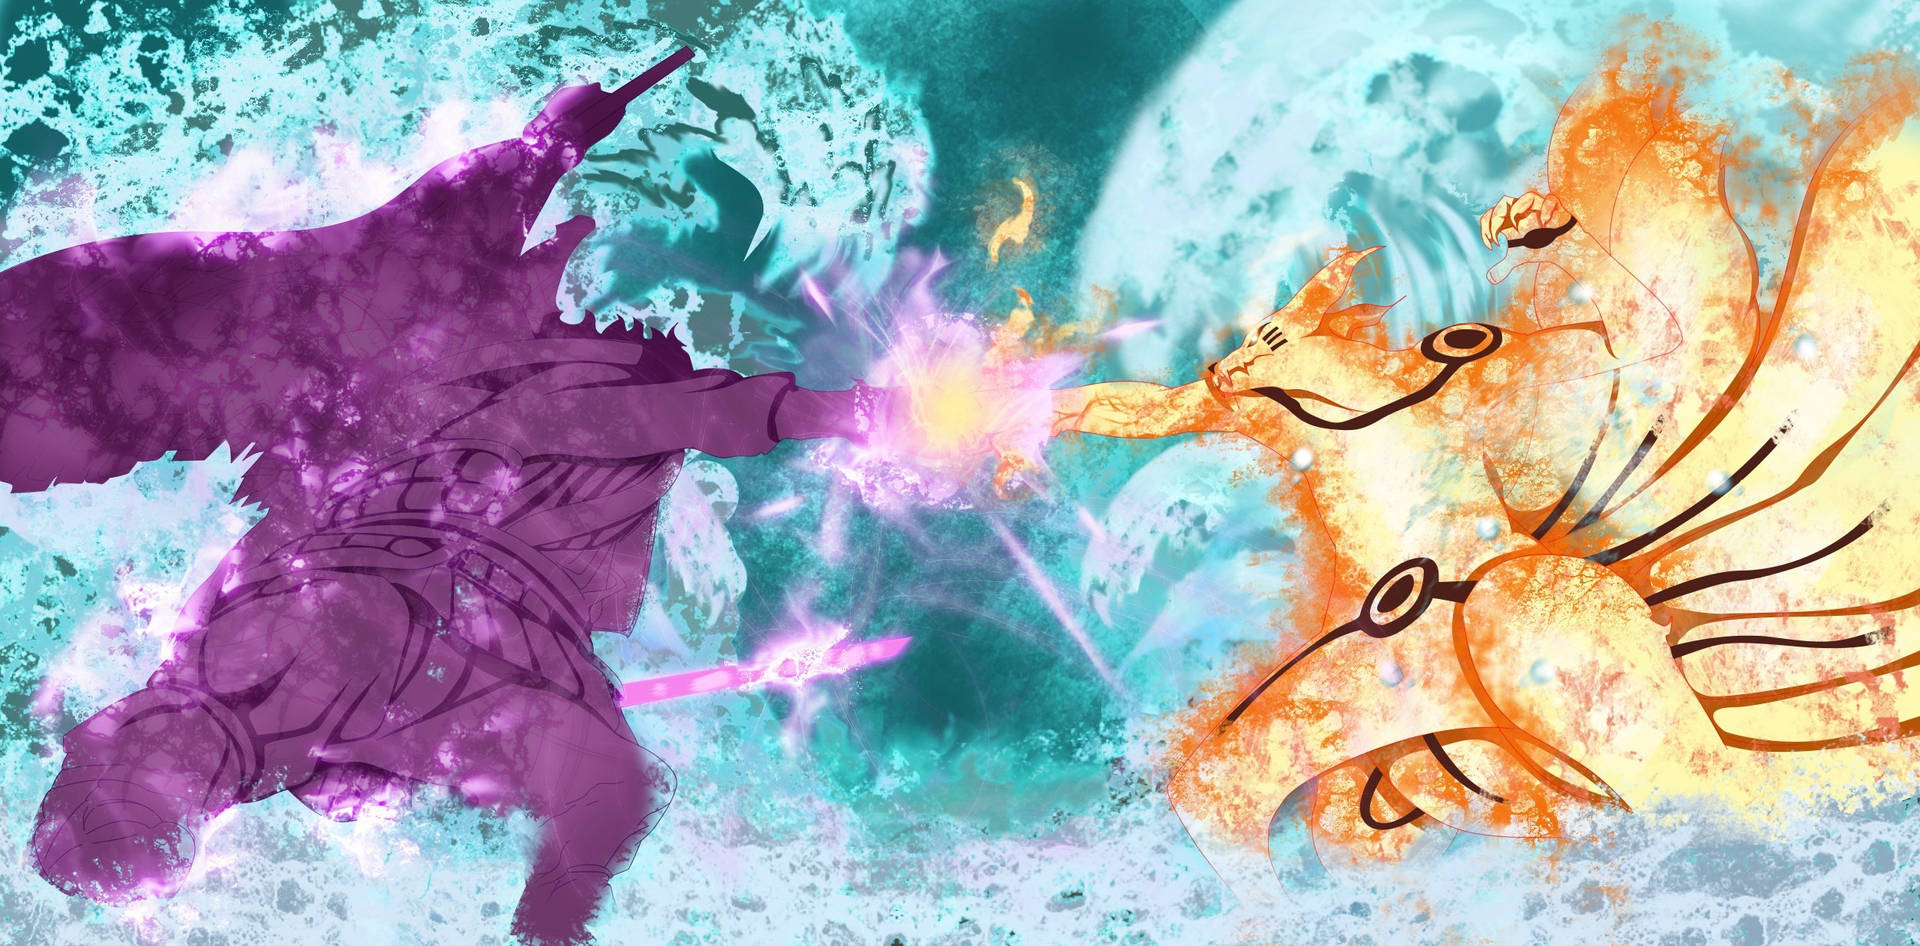 Naruto Vs Sasuke In Final Forms Wallpaper